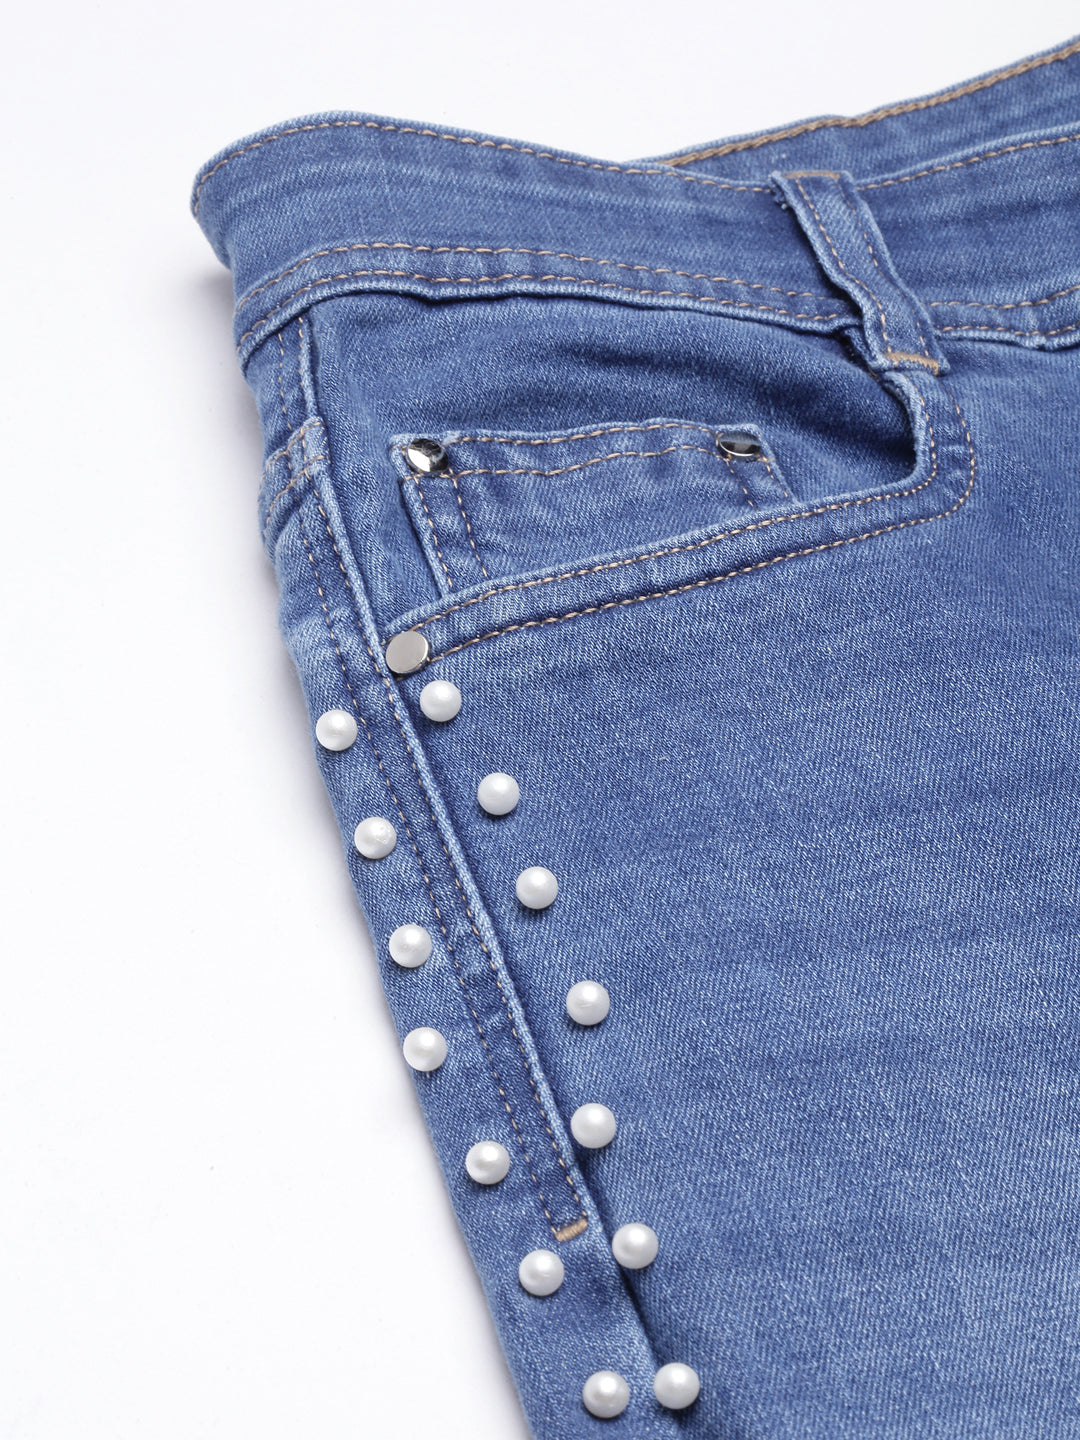 Women Skinny Fit Denim Blue Jean